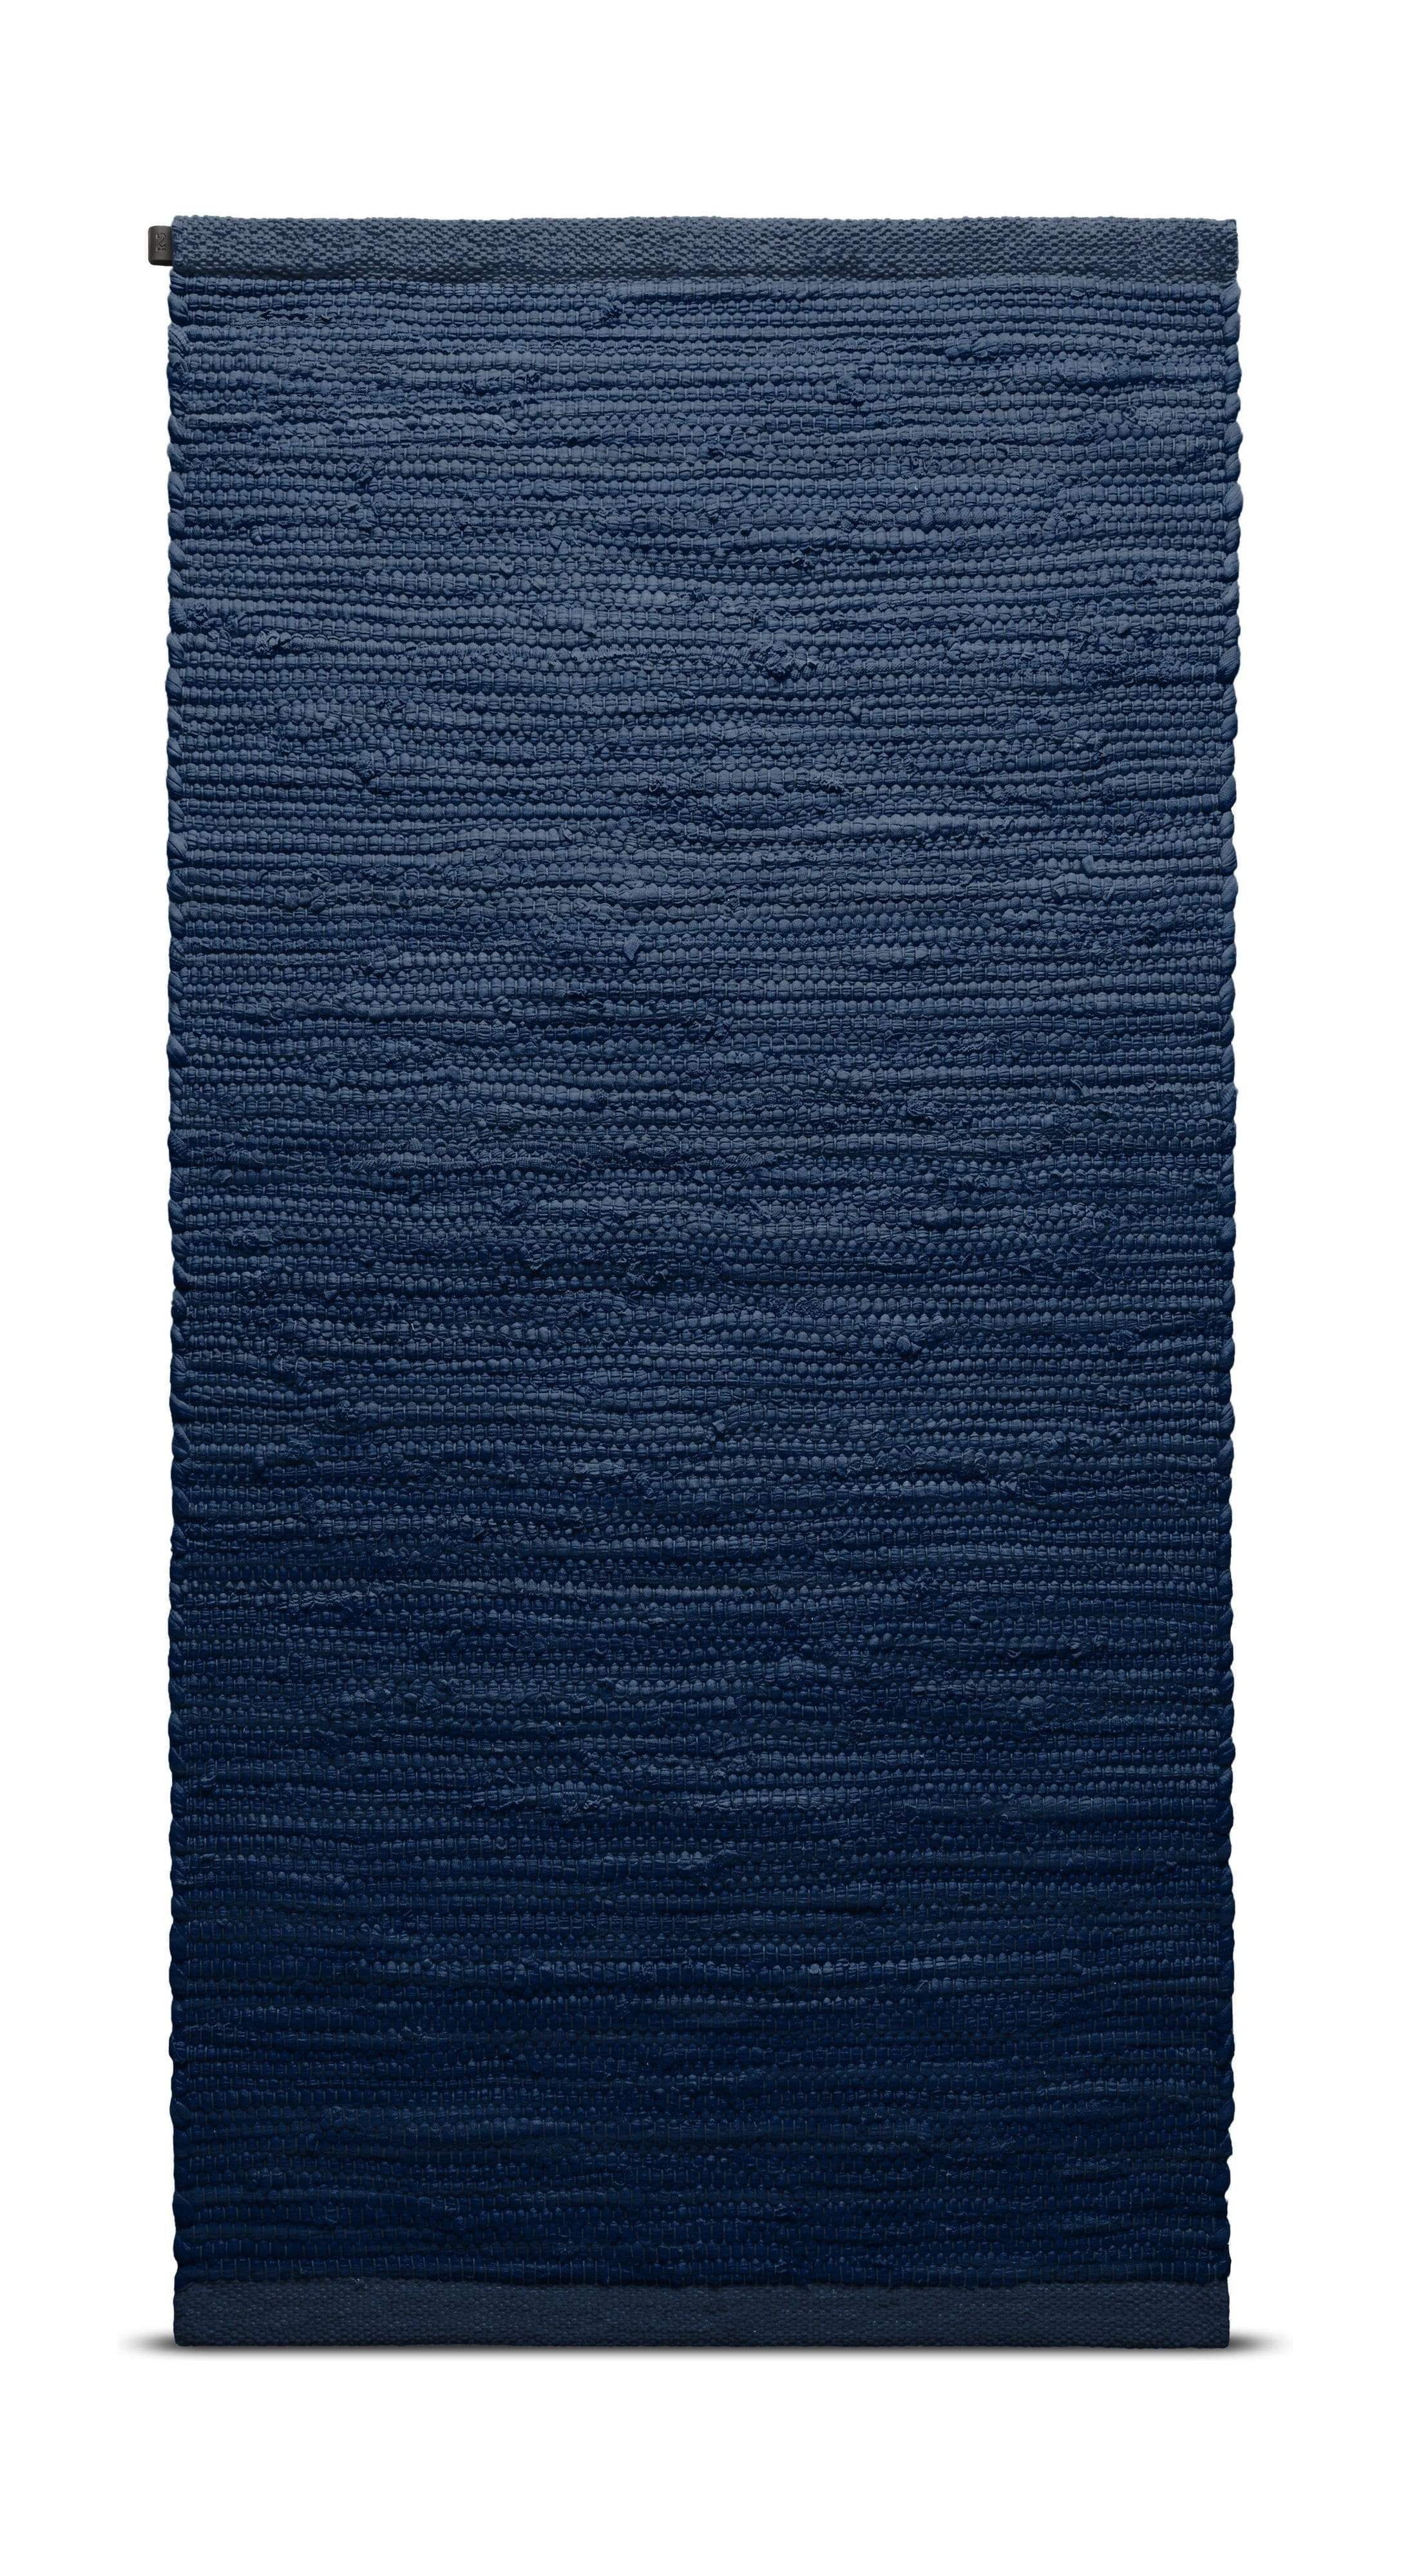 Rug Solid Bomullsmatta 140 x 200 cm, blåbär